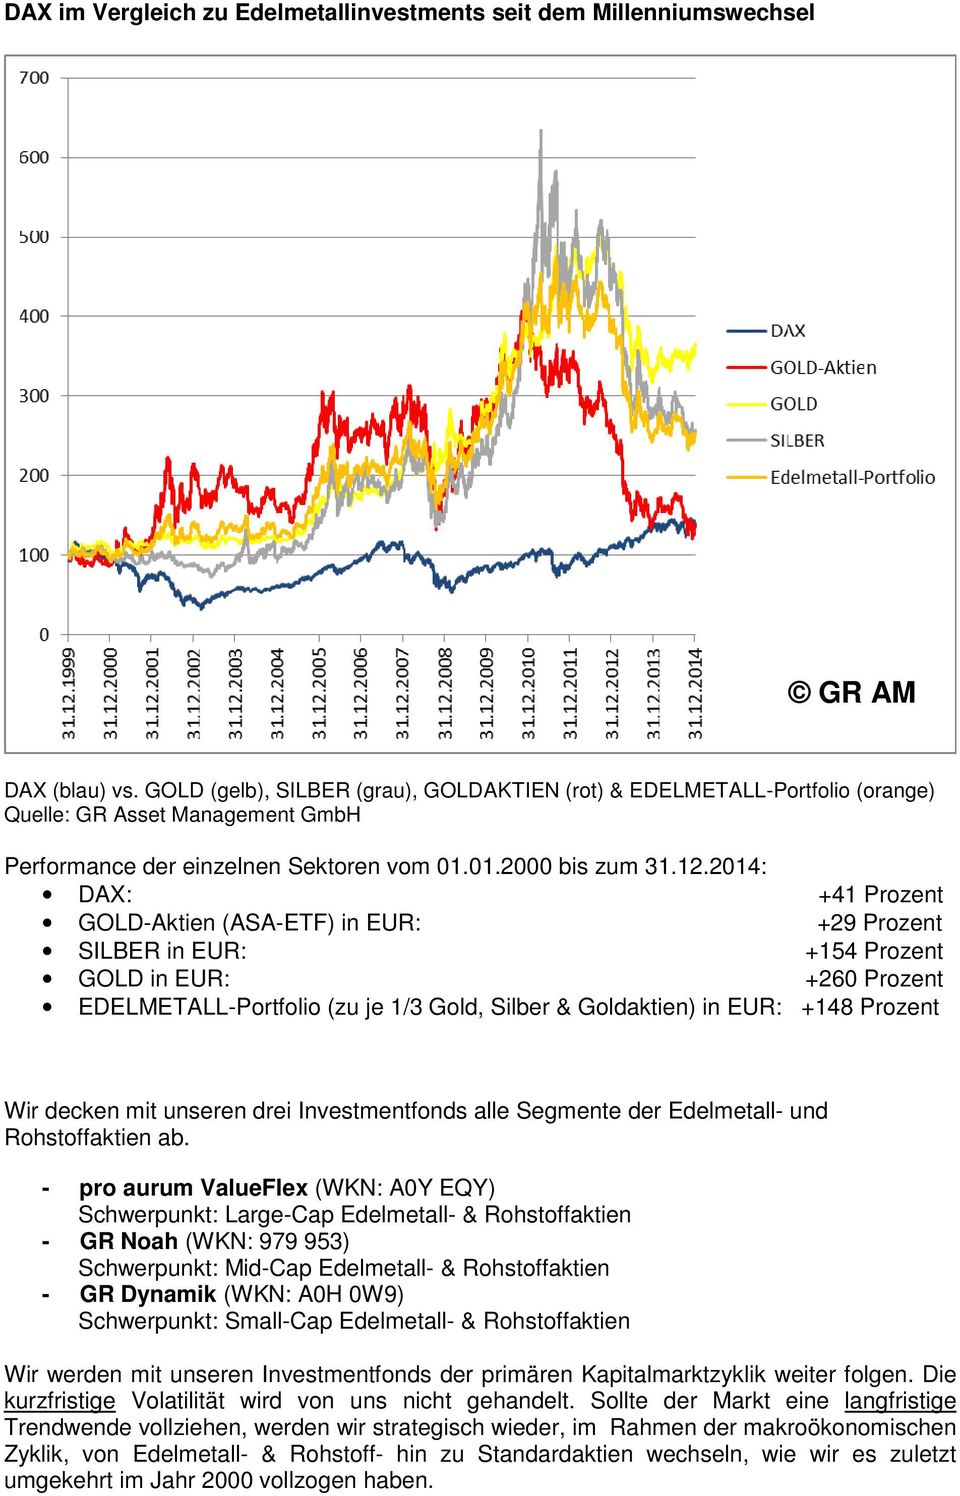 2014: DAX: +41 Prozent GOLD-Aktien (ASA-ETF) in EUR: +29 Prozent SILBER in EUR: +154 Prozent GOLD in EUR: +260 Prozent EDELMETALL-Portfolio (zu je 1/3 Gold, Silber & Goldaktien) in EUR: +148 Prozent